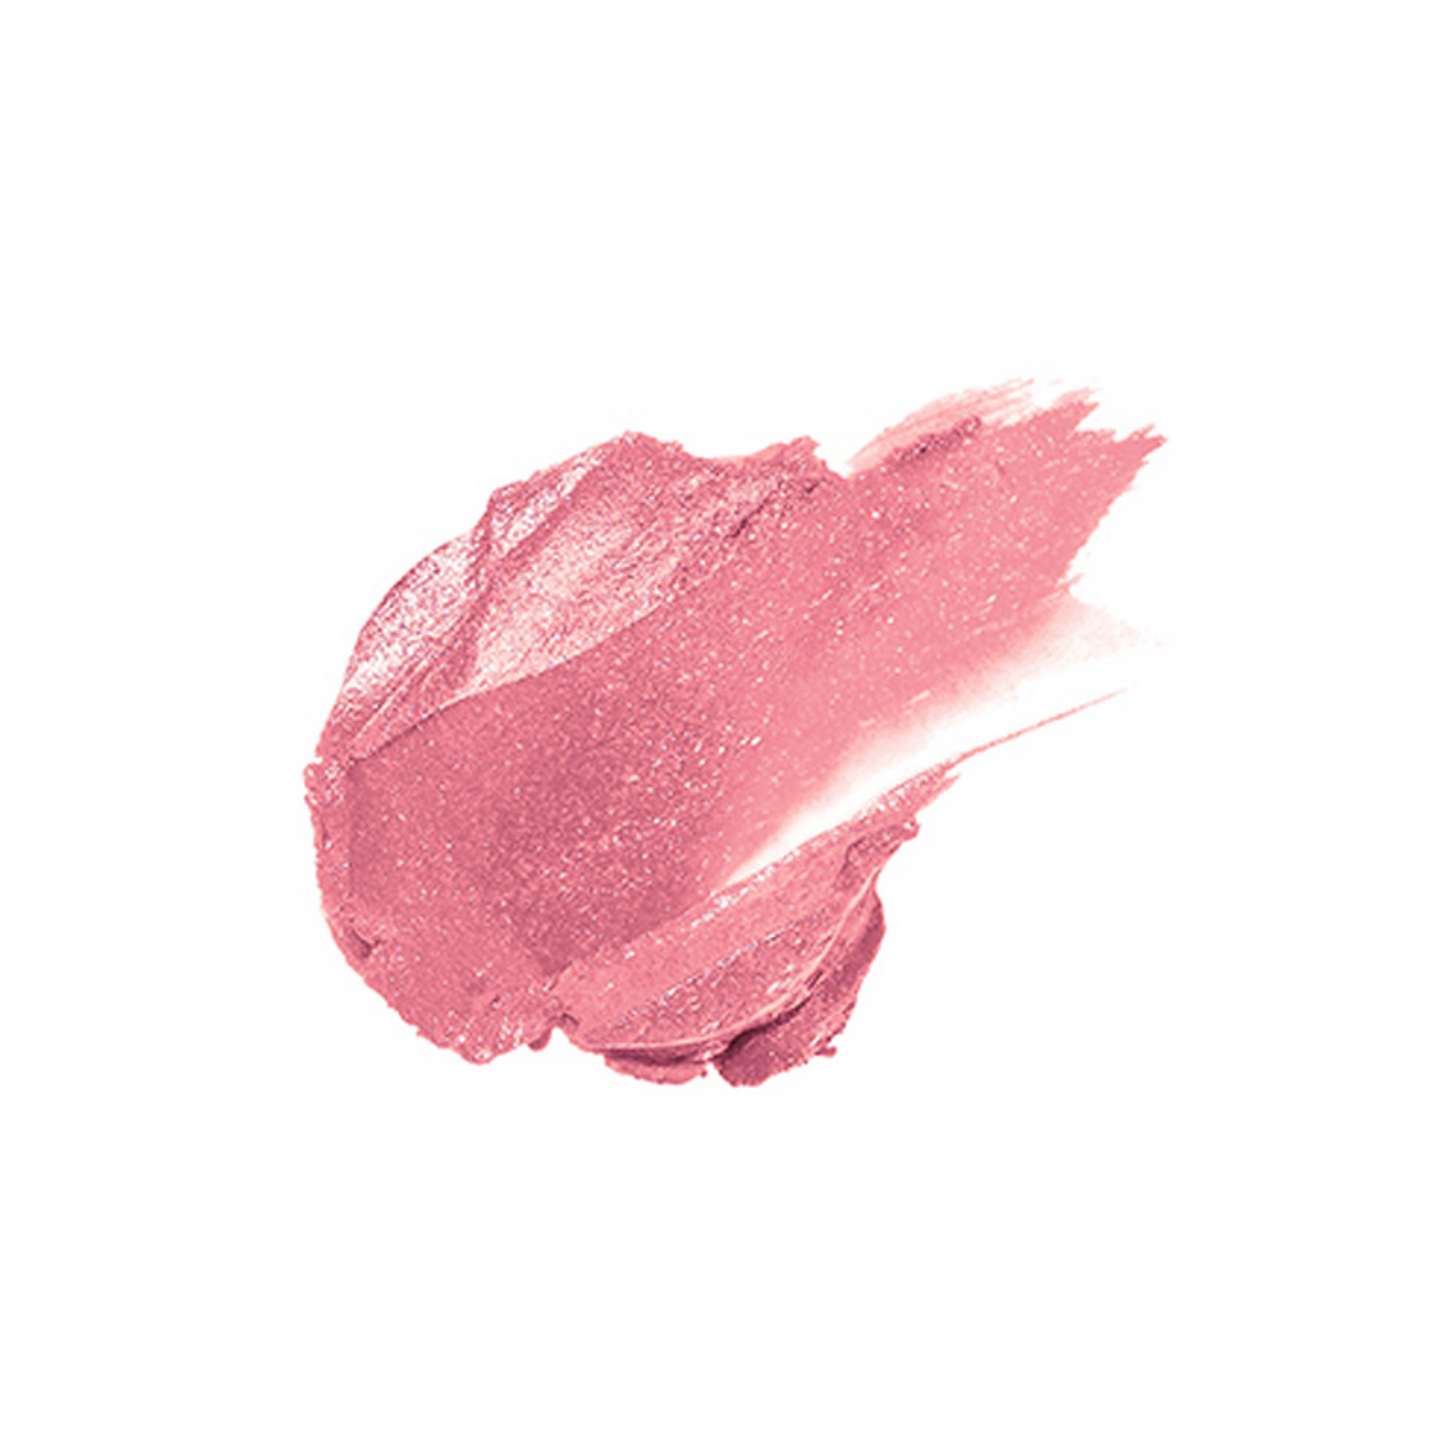 Mineral Fusion Lipstick, Inspire